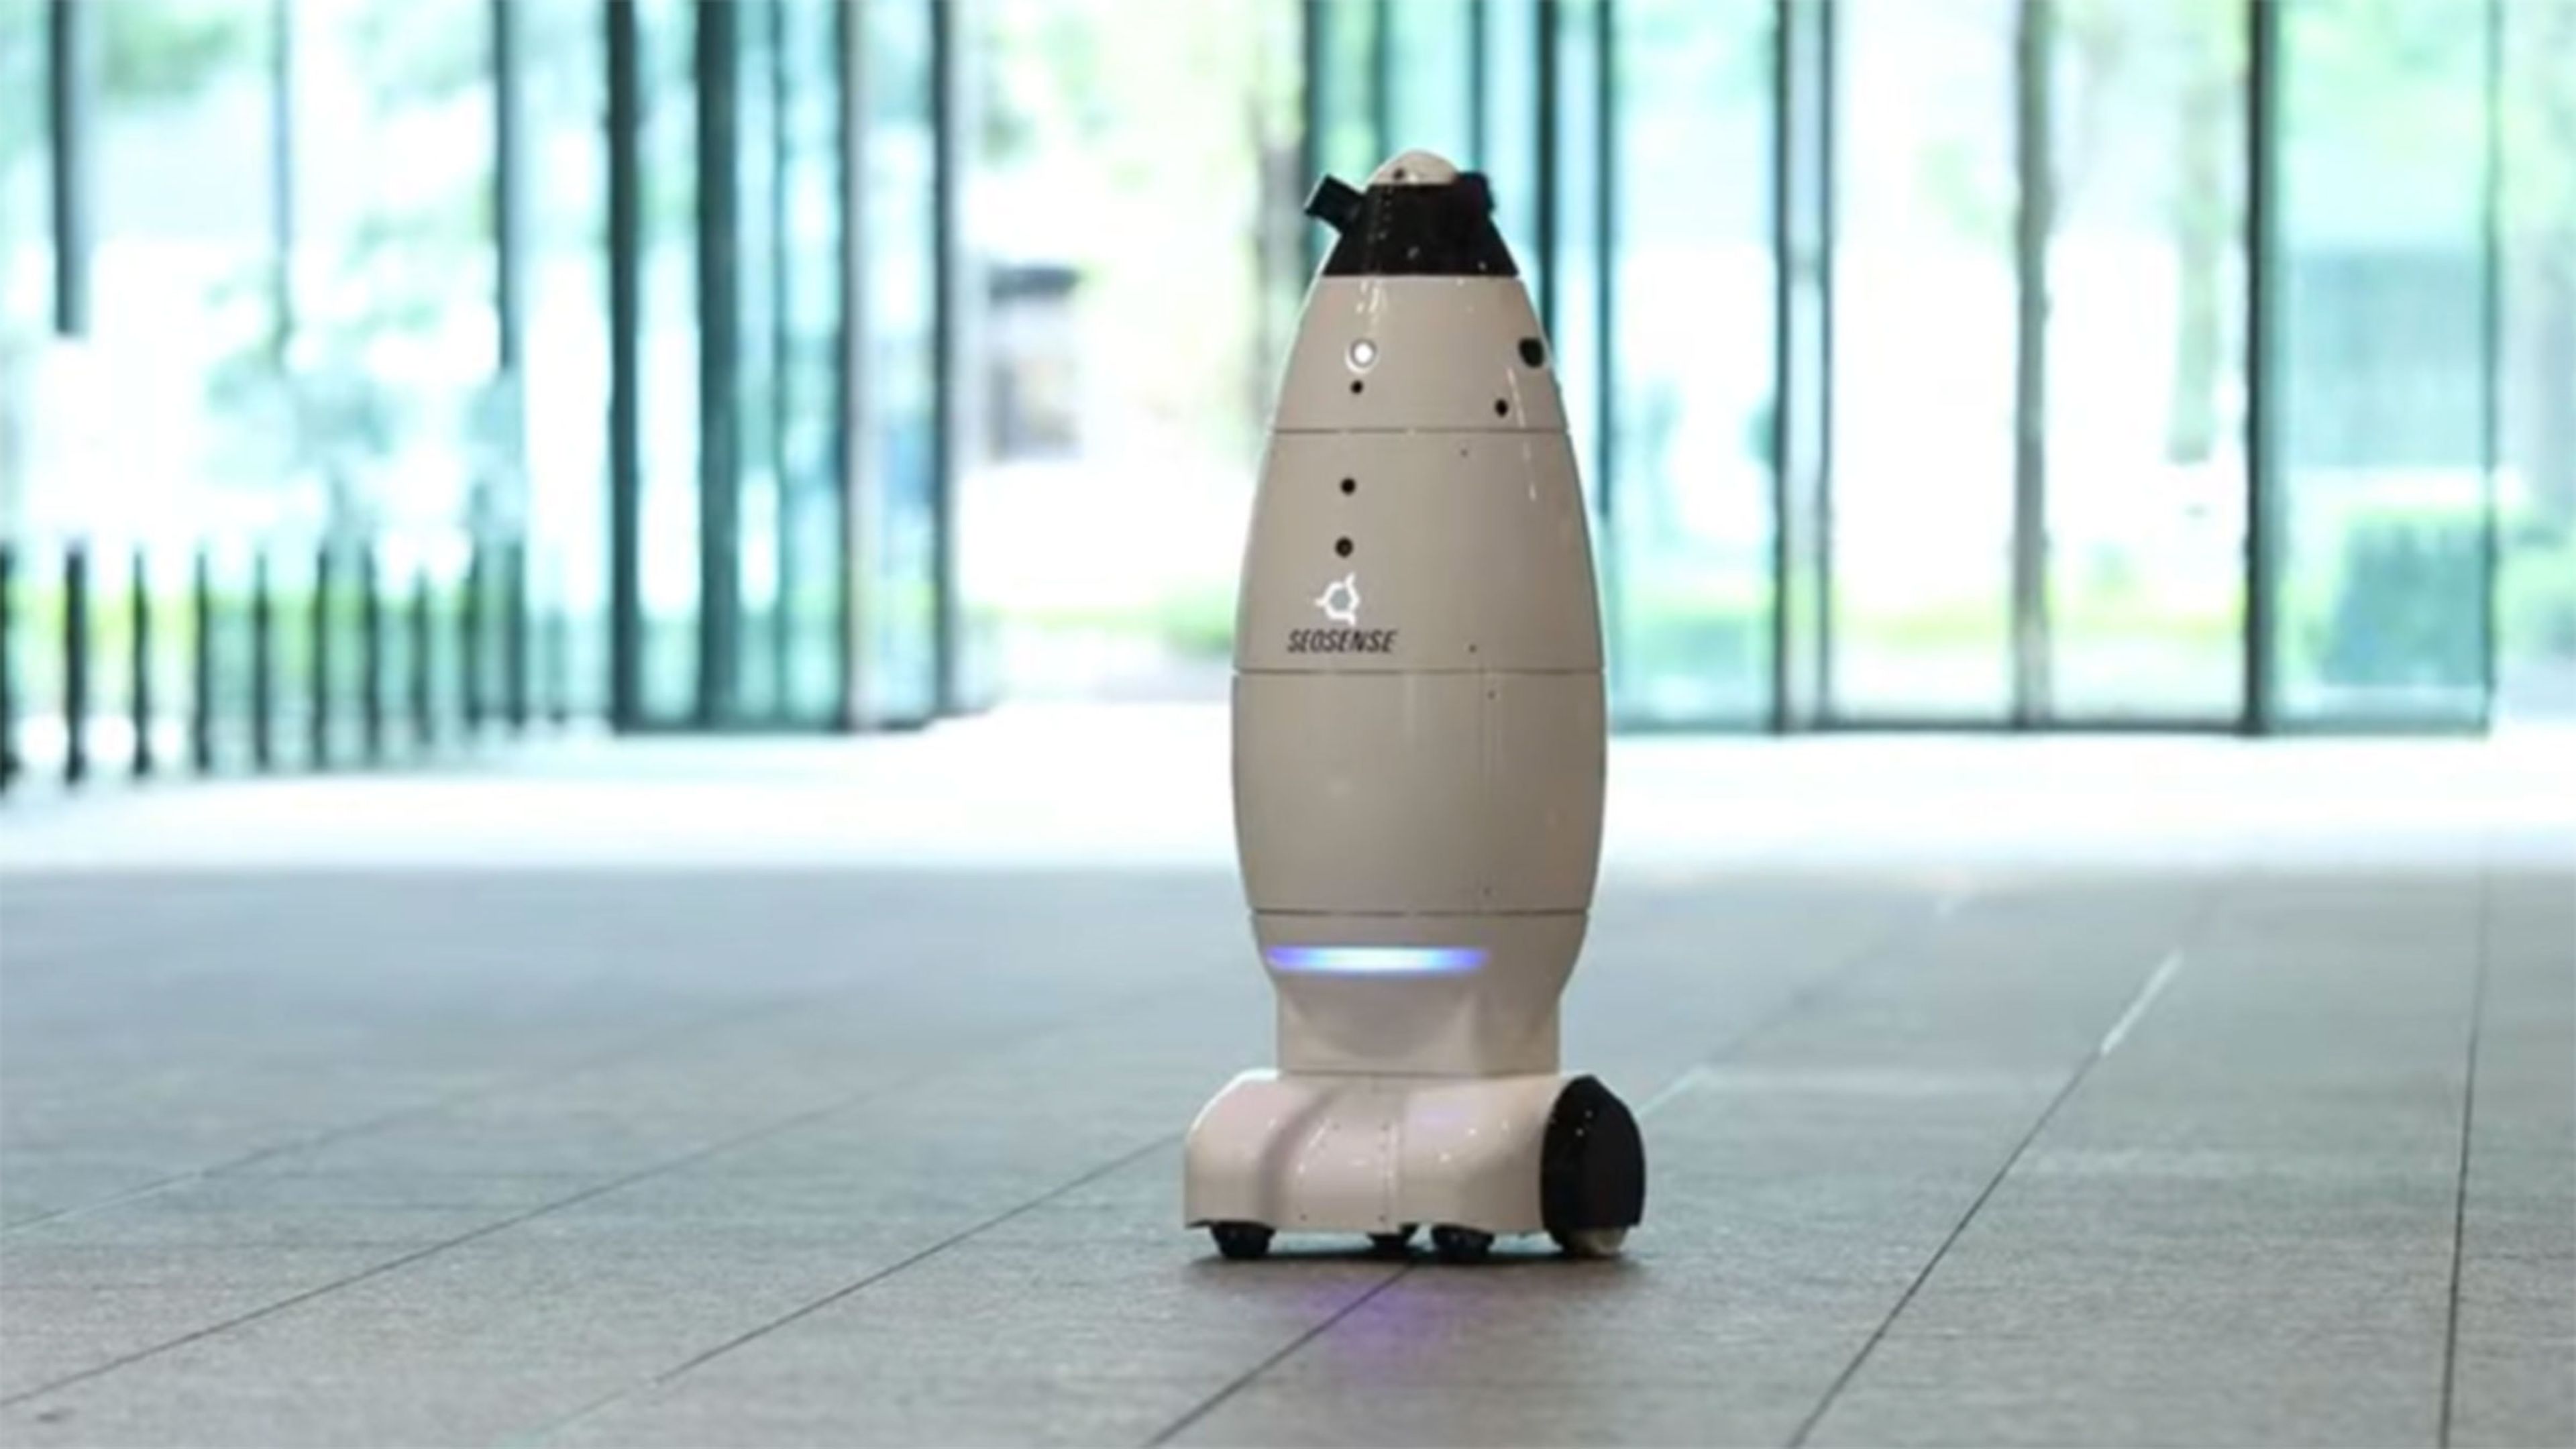 Robots al estilo R2-D2 patrullan el edificio del gobierno metropolitano en Tokio